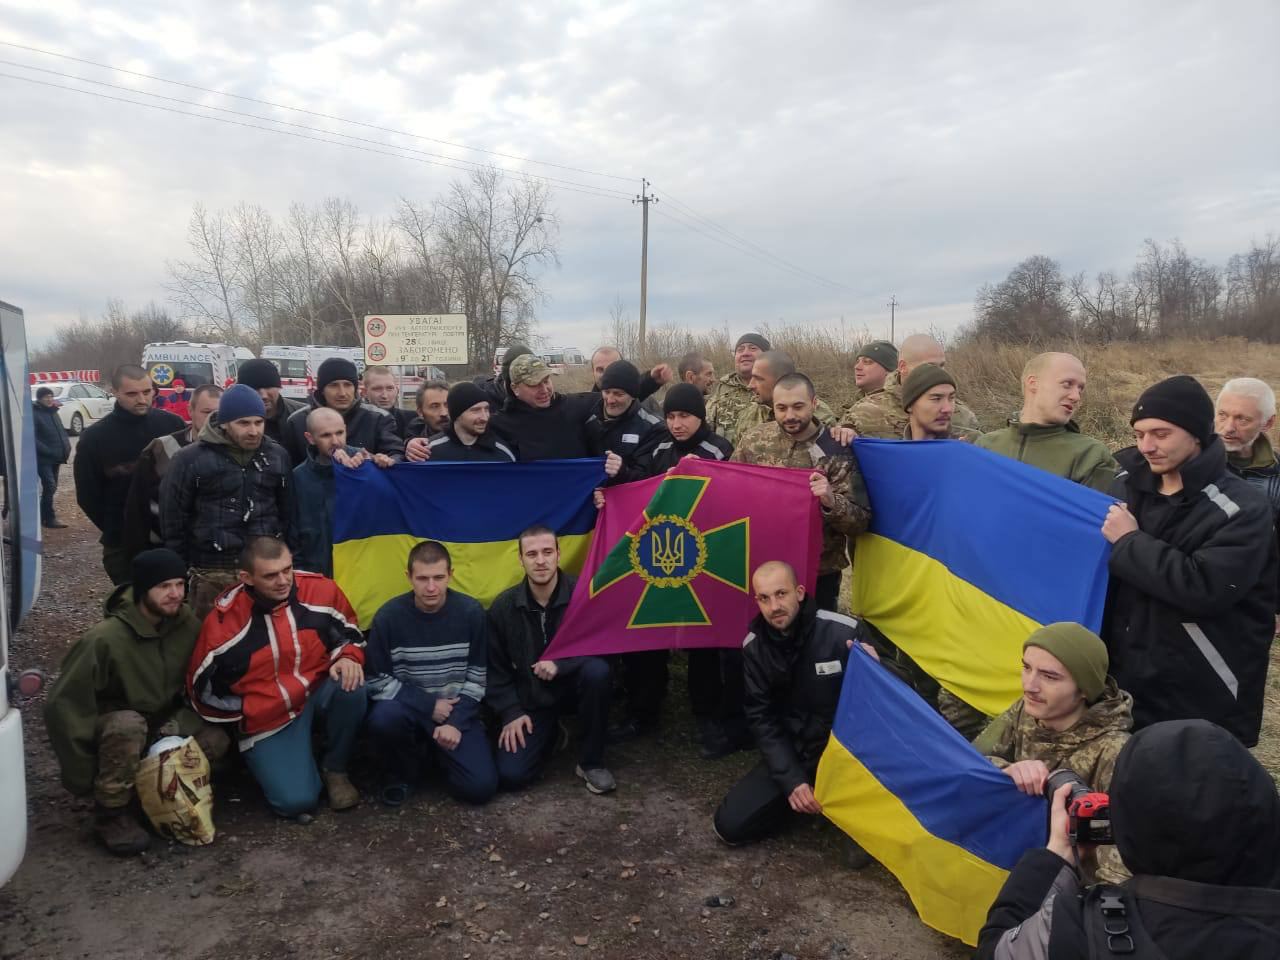 Rusiya-Ukrayna arasında növbəti əsir MÜBADİLƏSİ – 50 hərbçi geri qaytarıldı - FOTO 